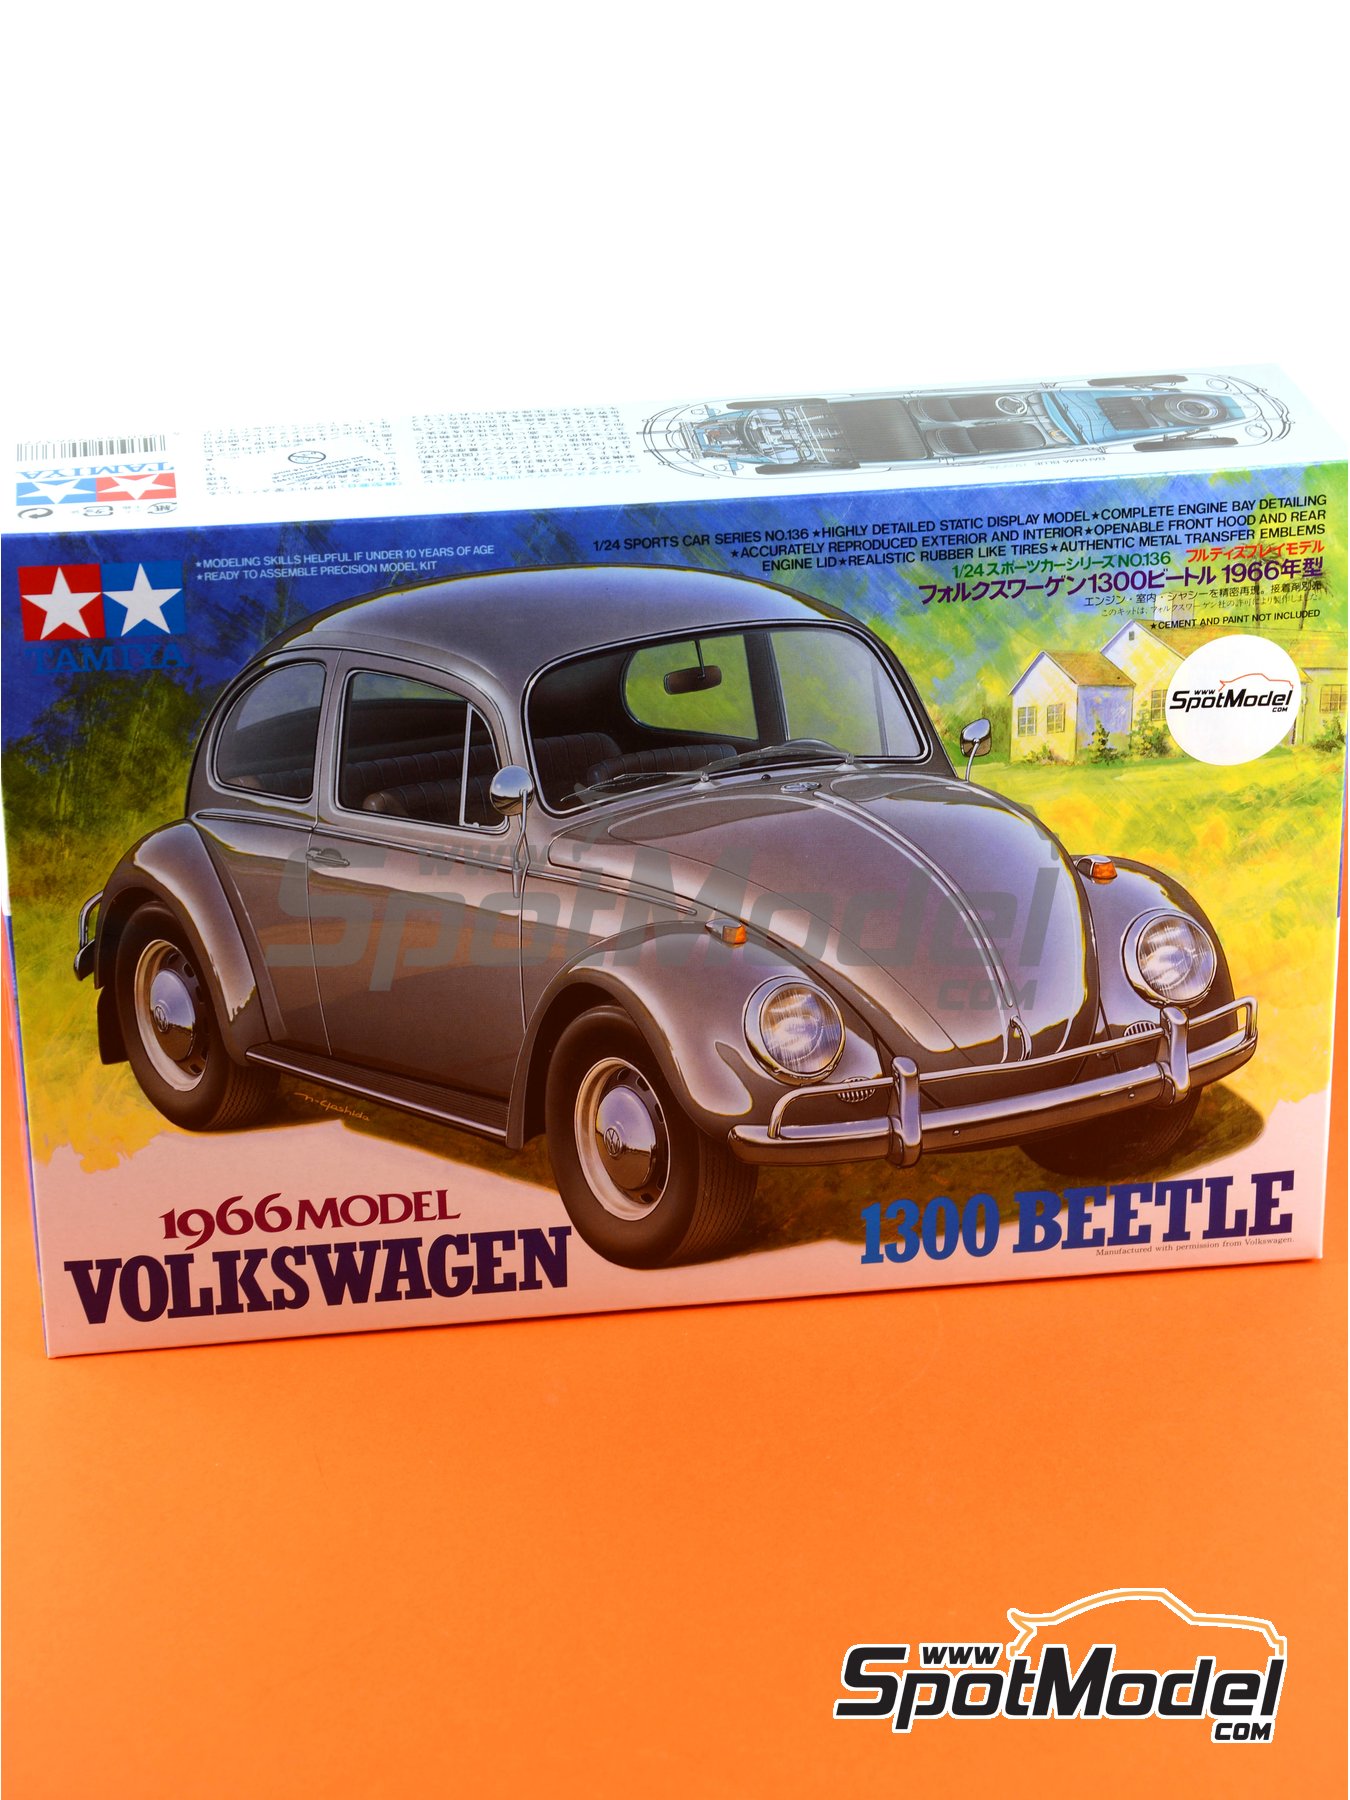 Plastic Kit Tamiya Volkswagen 1300 Beetle VW 1:24 24136 